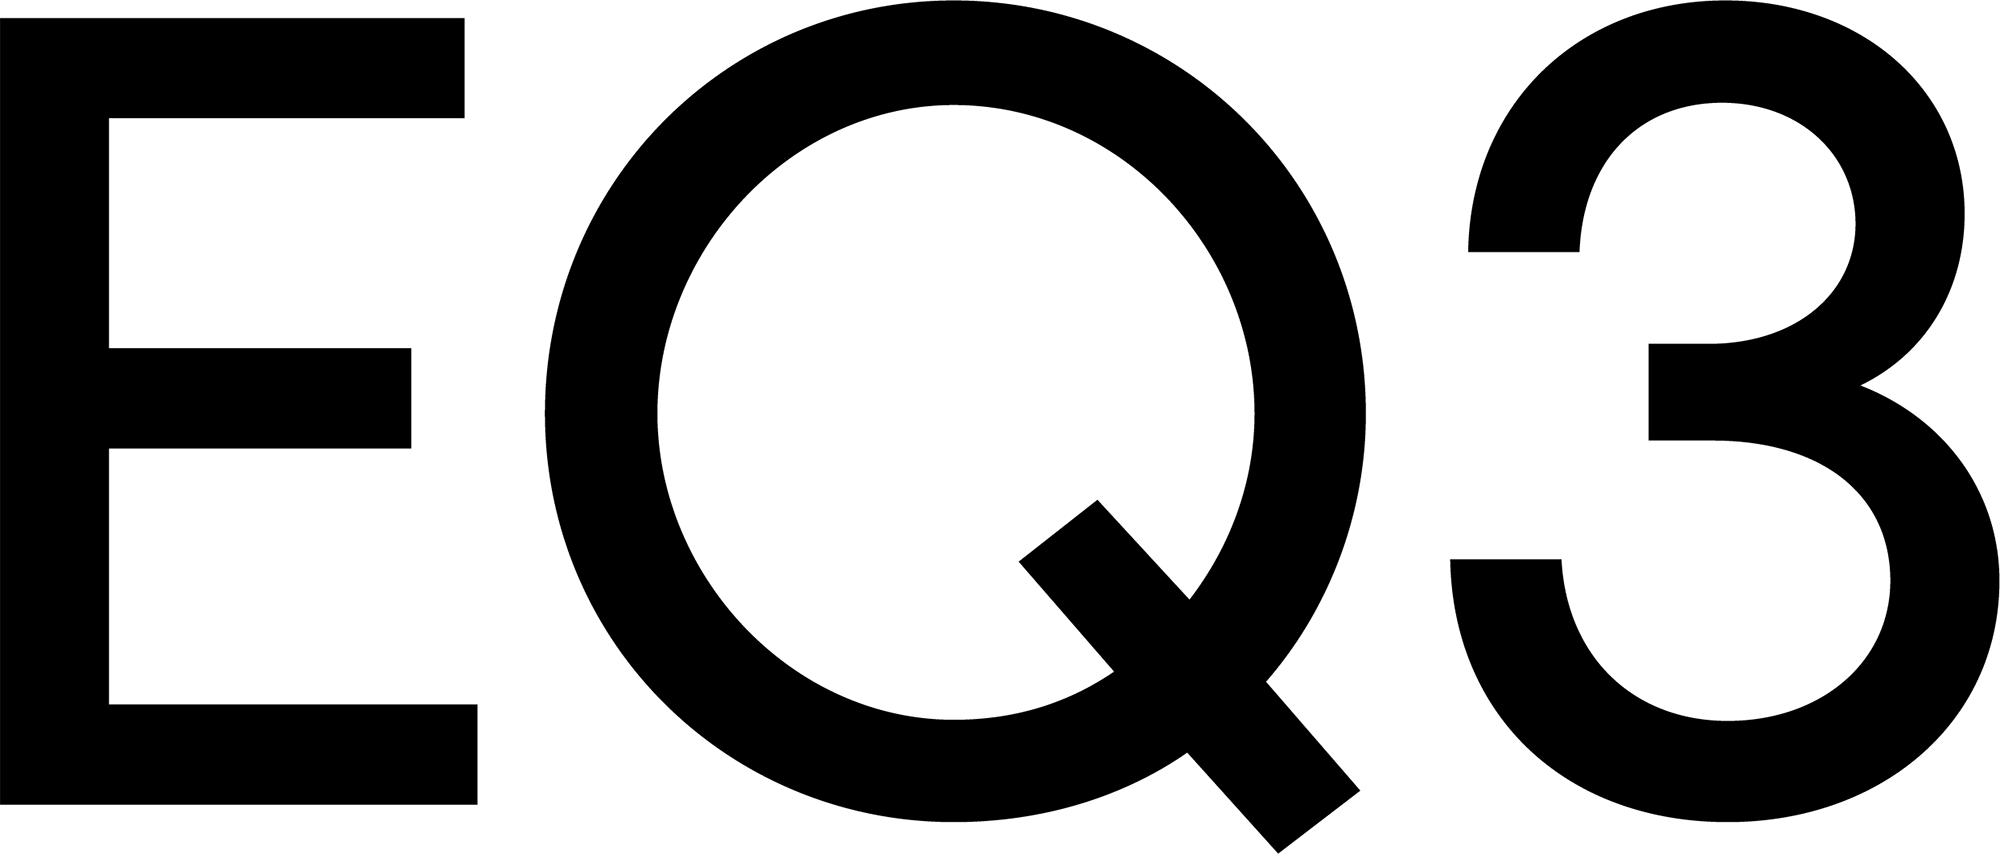 Eq3 logo black rgb